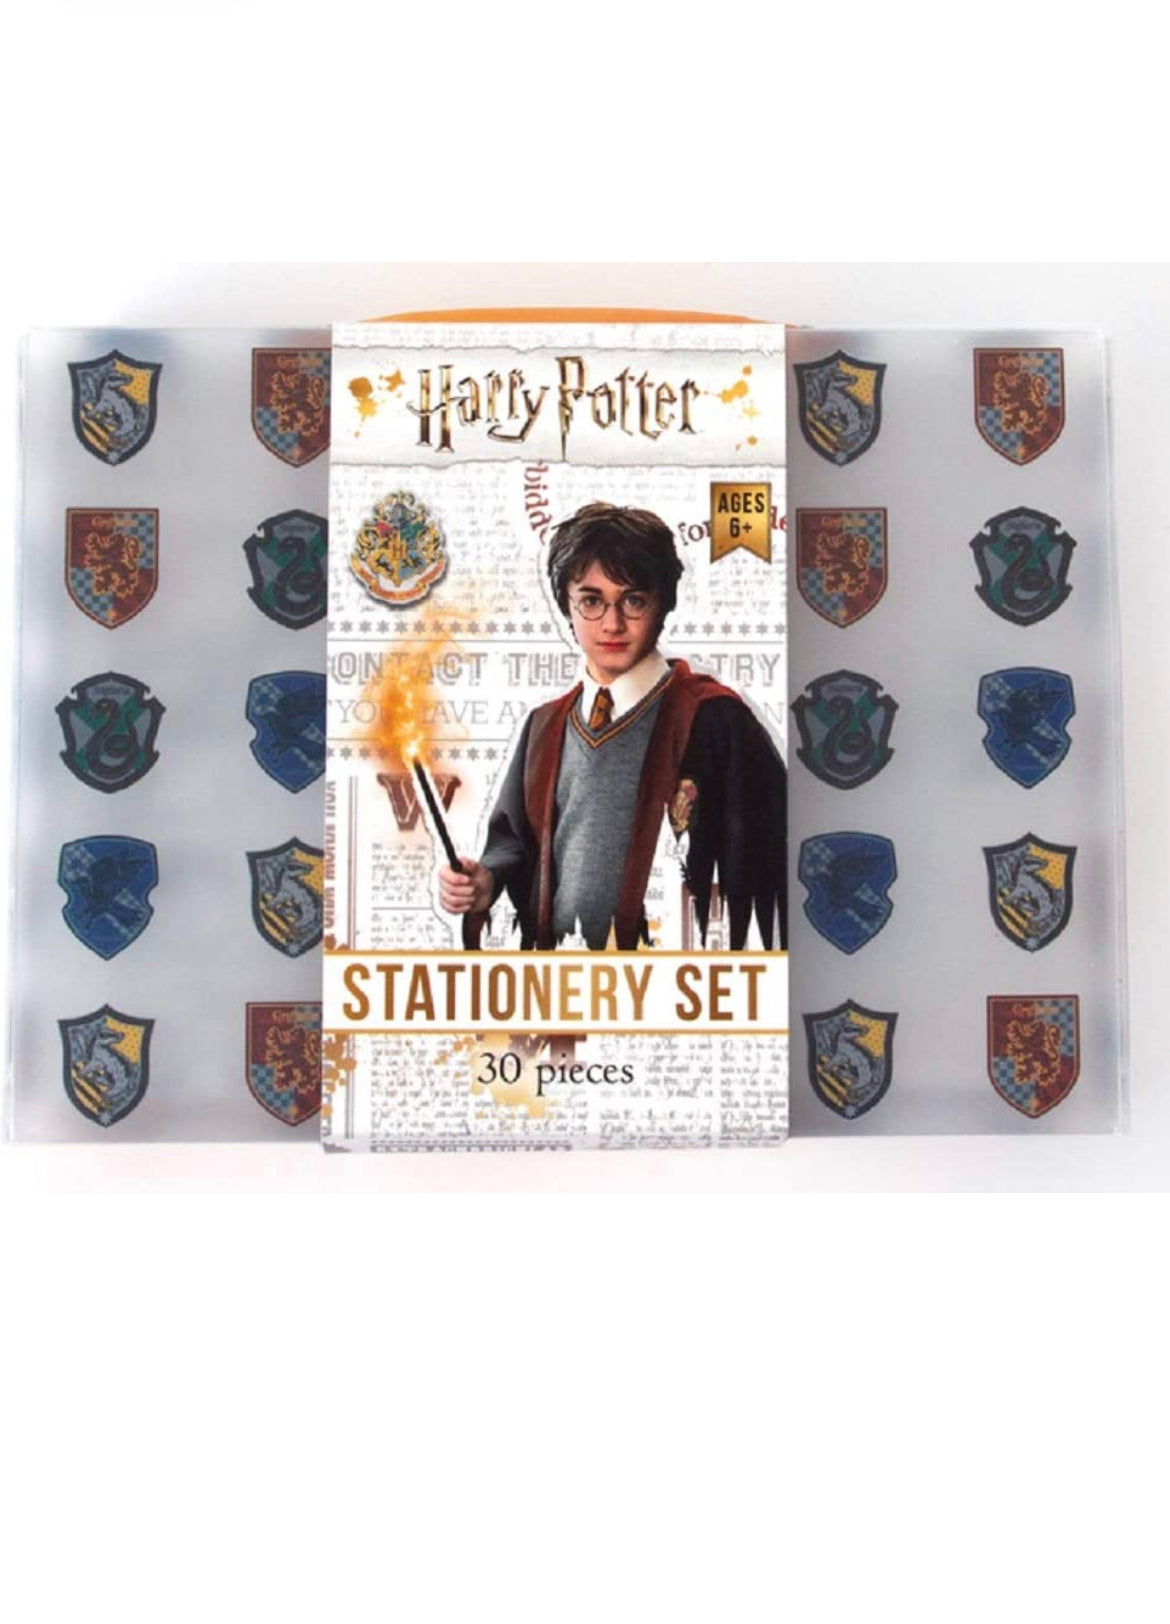 Harry Potter Stationery Set.